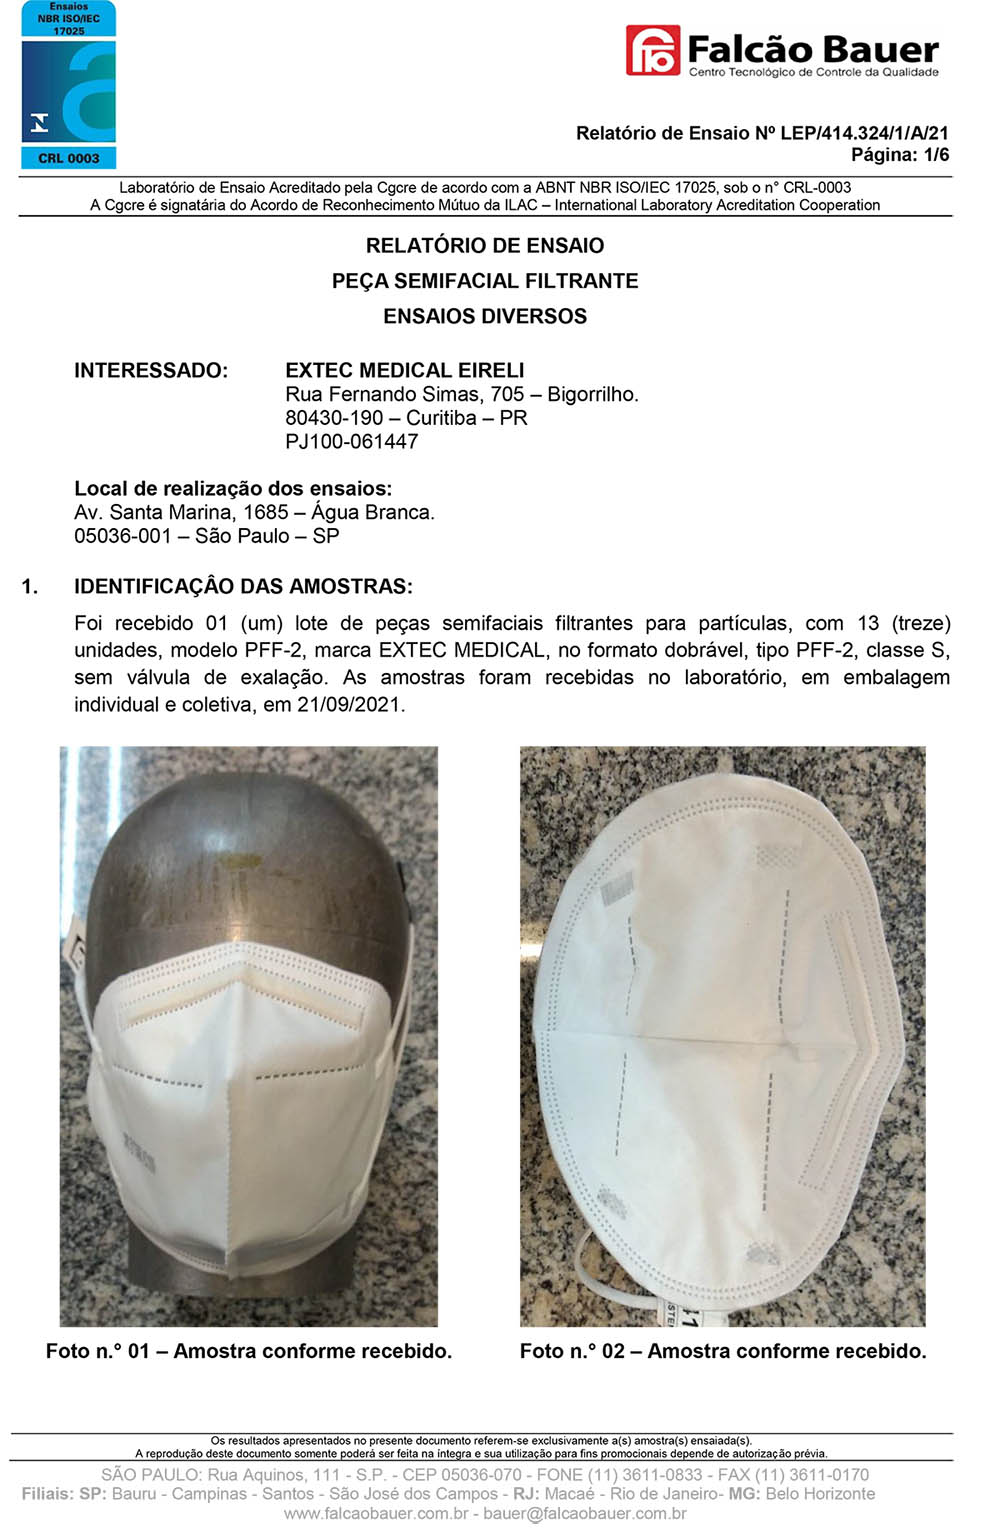 Máscara respirador N95 - pacote 50 unidades